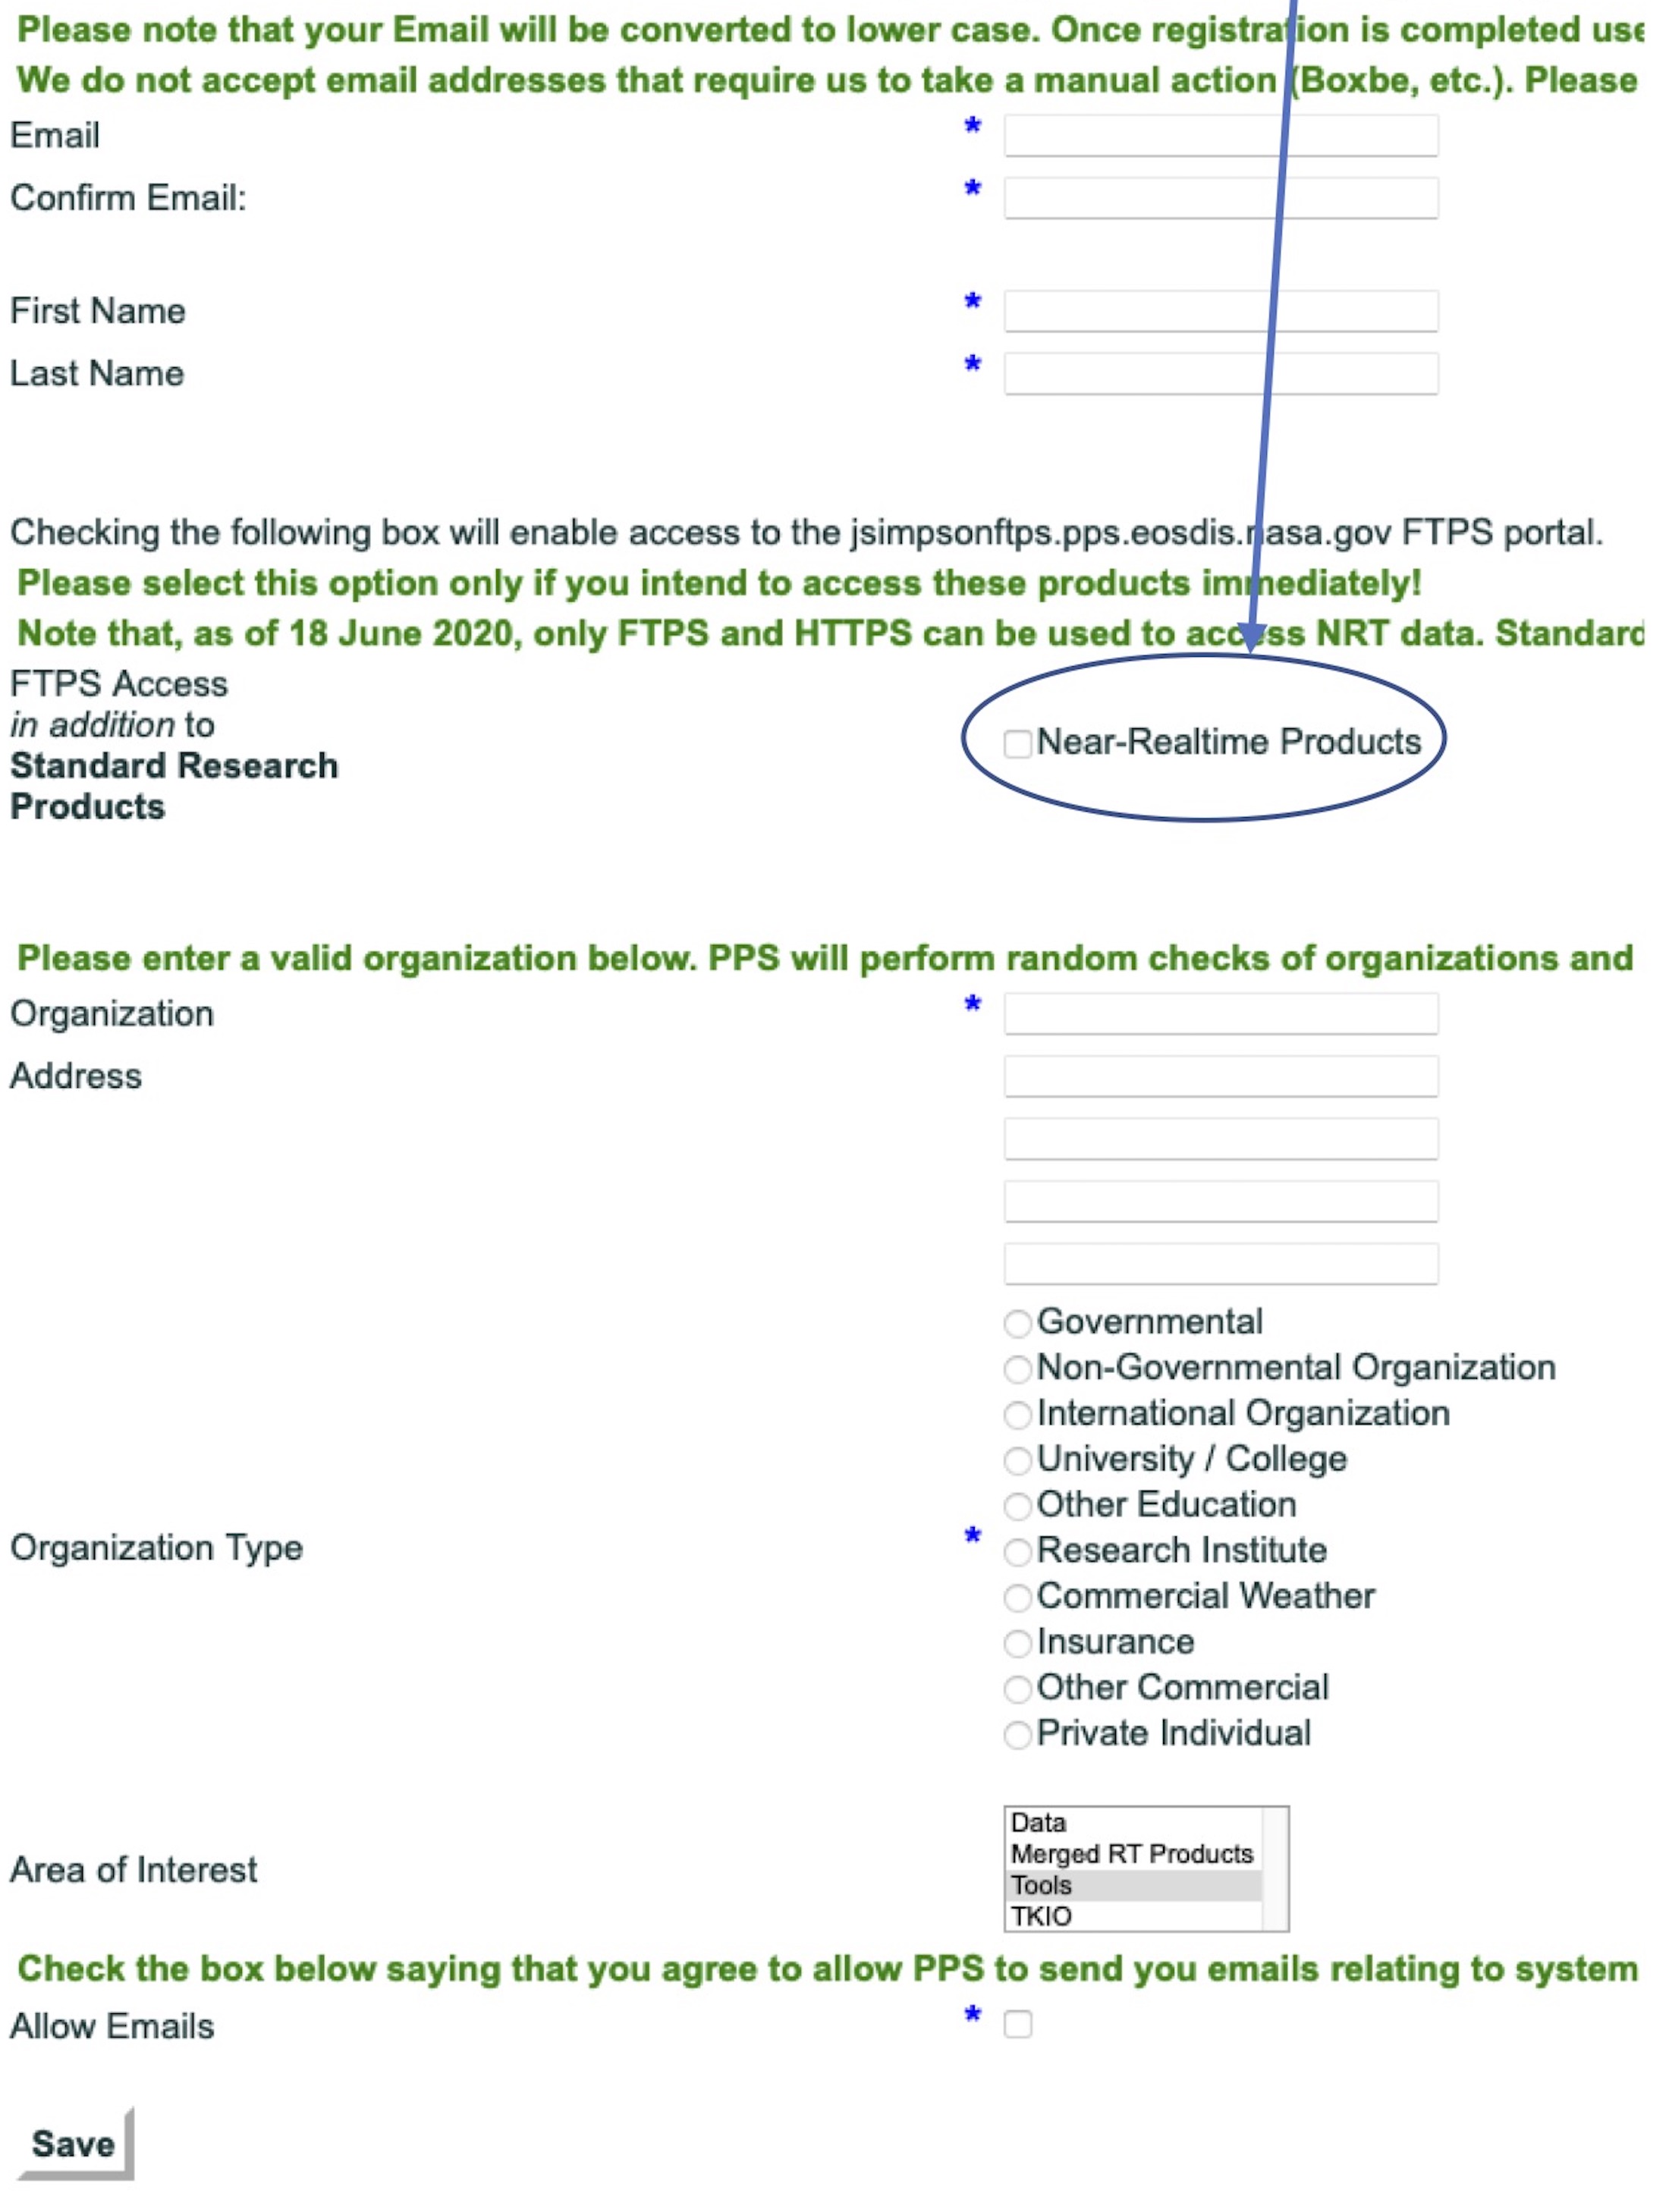 Registration form for IMERG Product